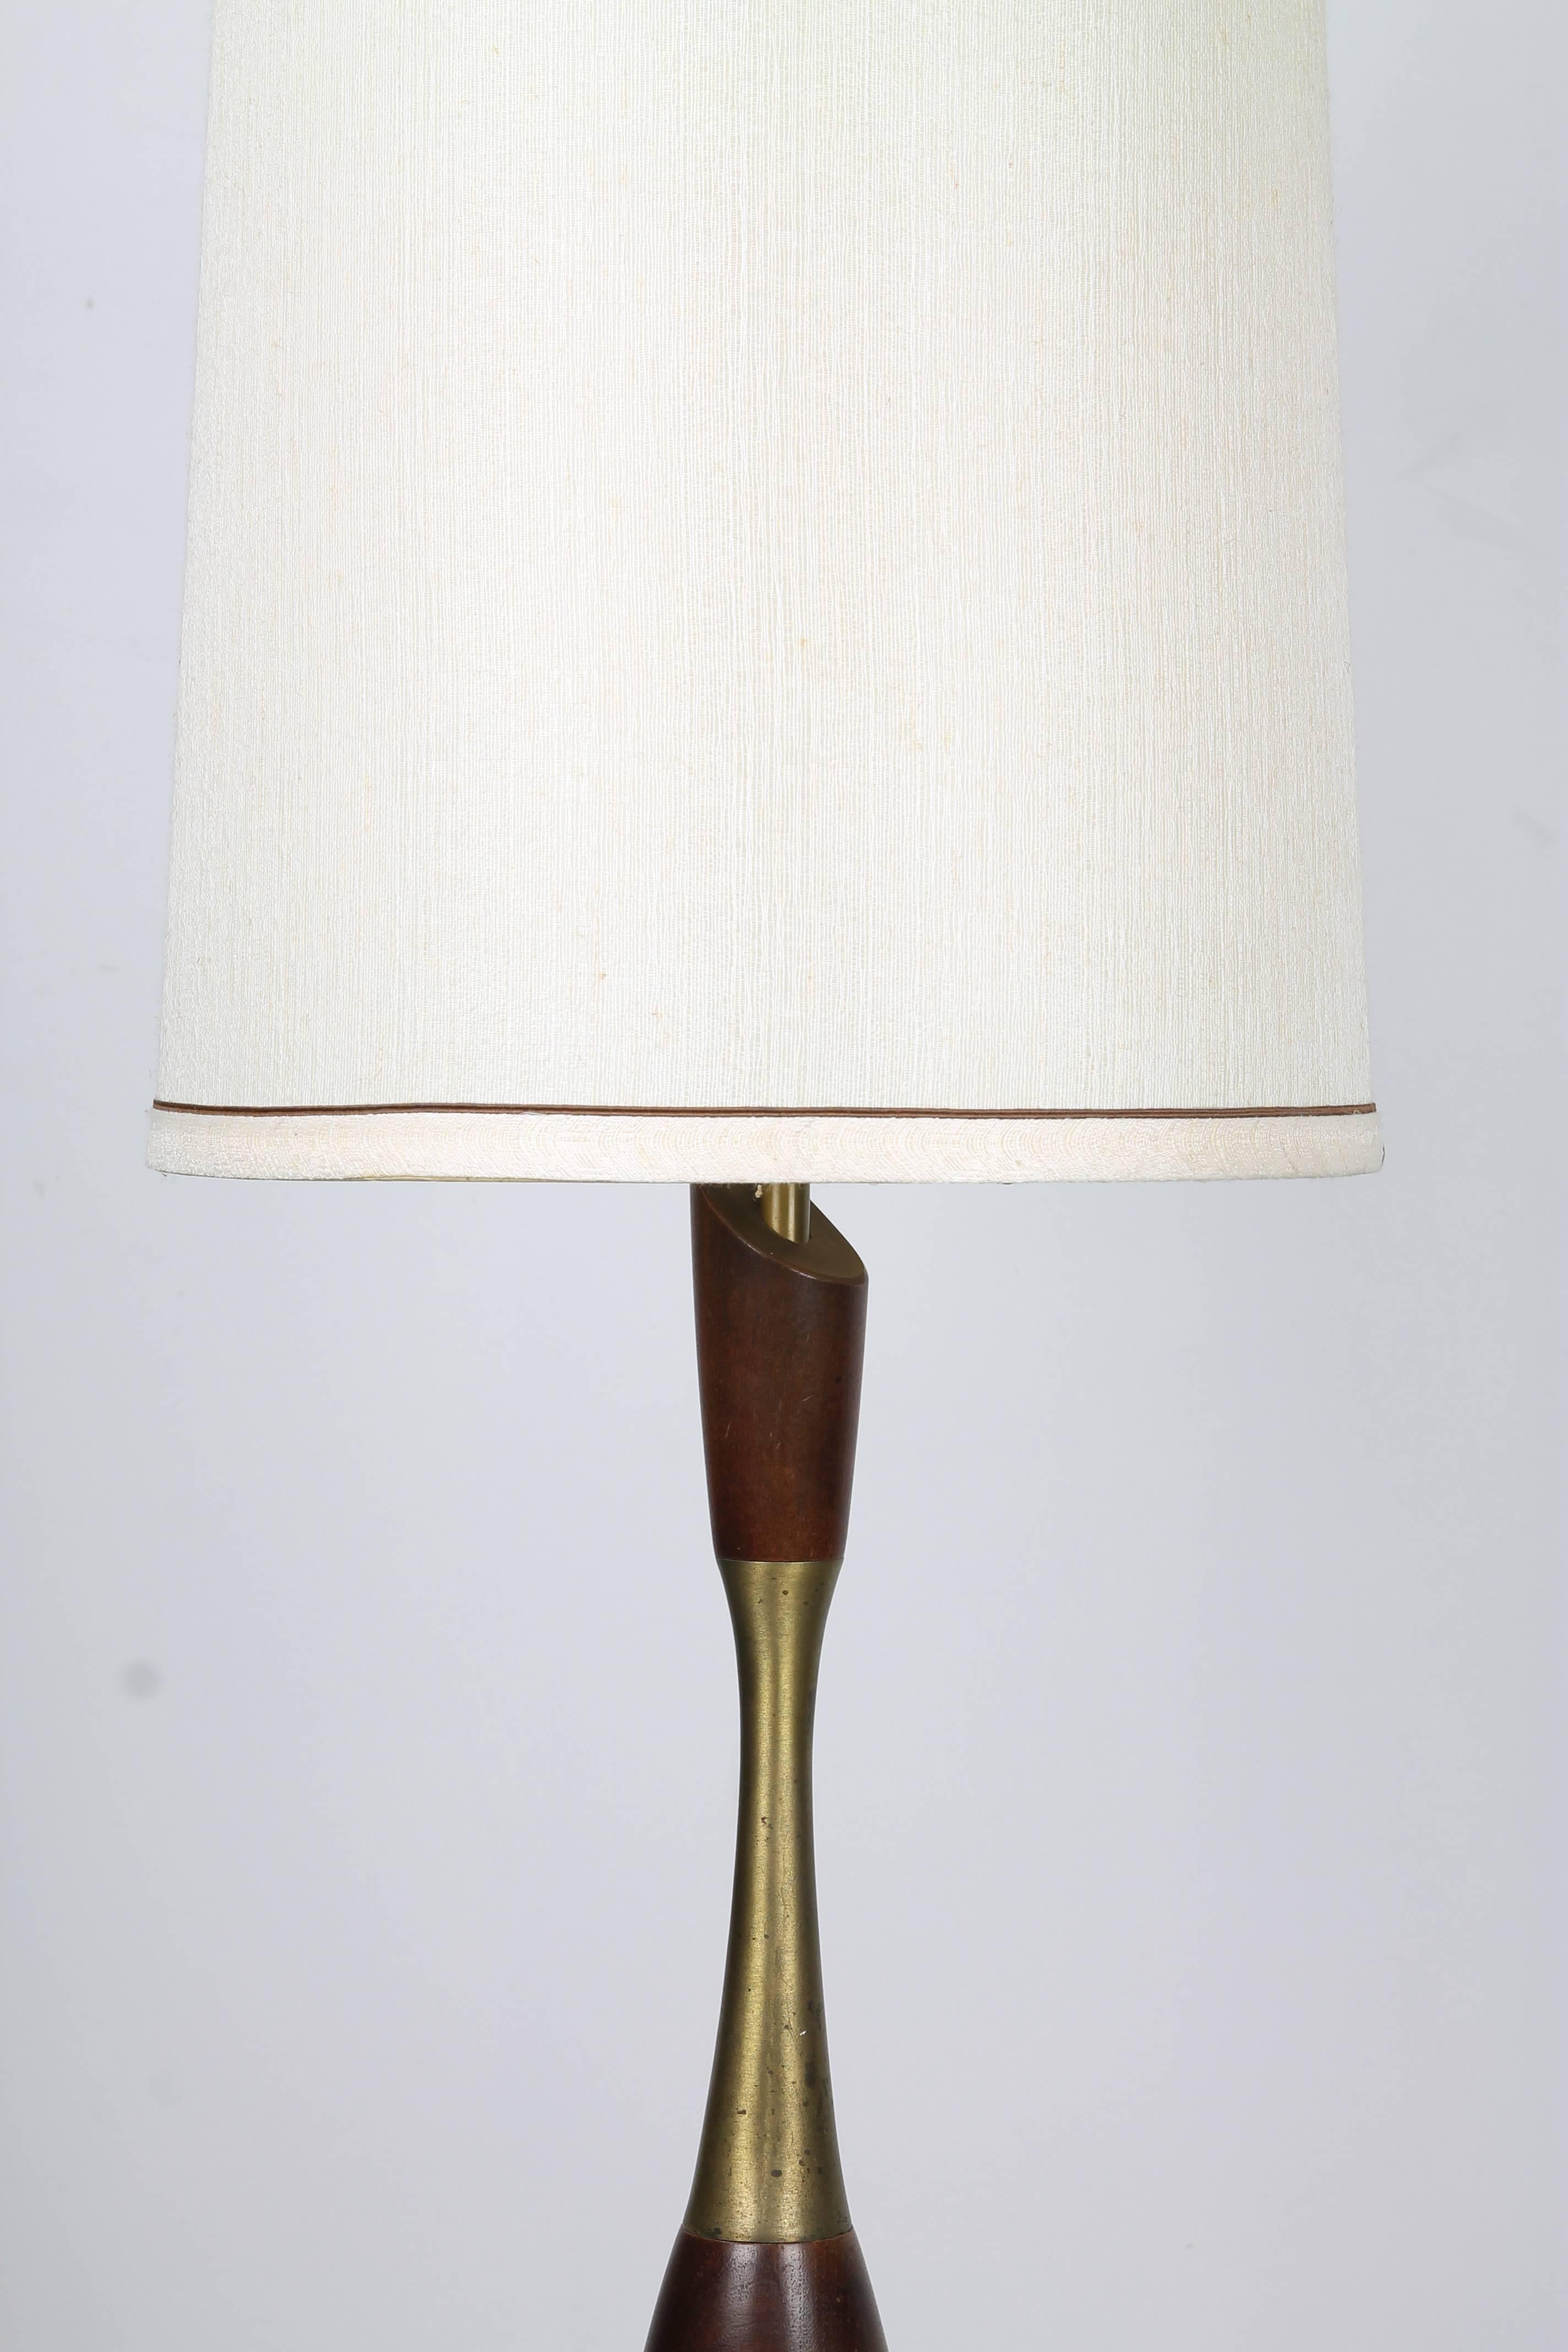 Lampe de table Tony Paul de forme organique en noyer tourné et éléments en laiton, avec un grand abat-jour cylindrique blanc cassé.